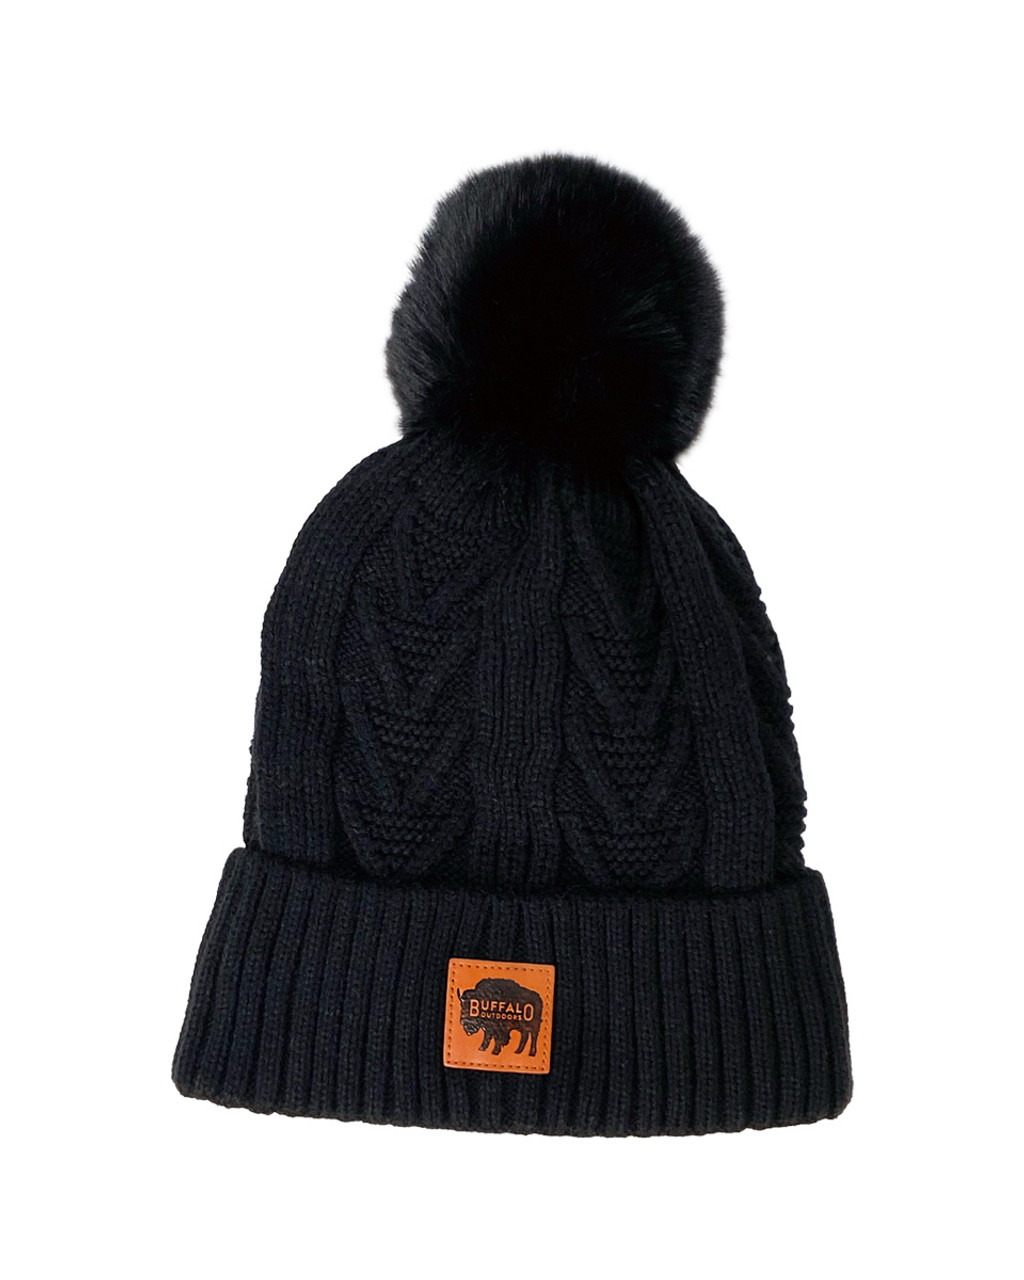 Buffalo Outdoors® Workwear Women's Knit Pom Hat-Black